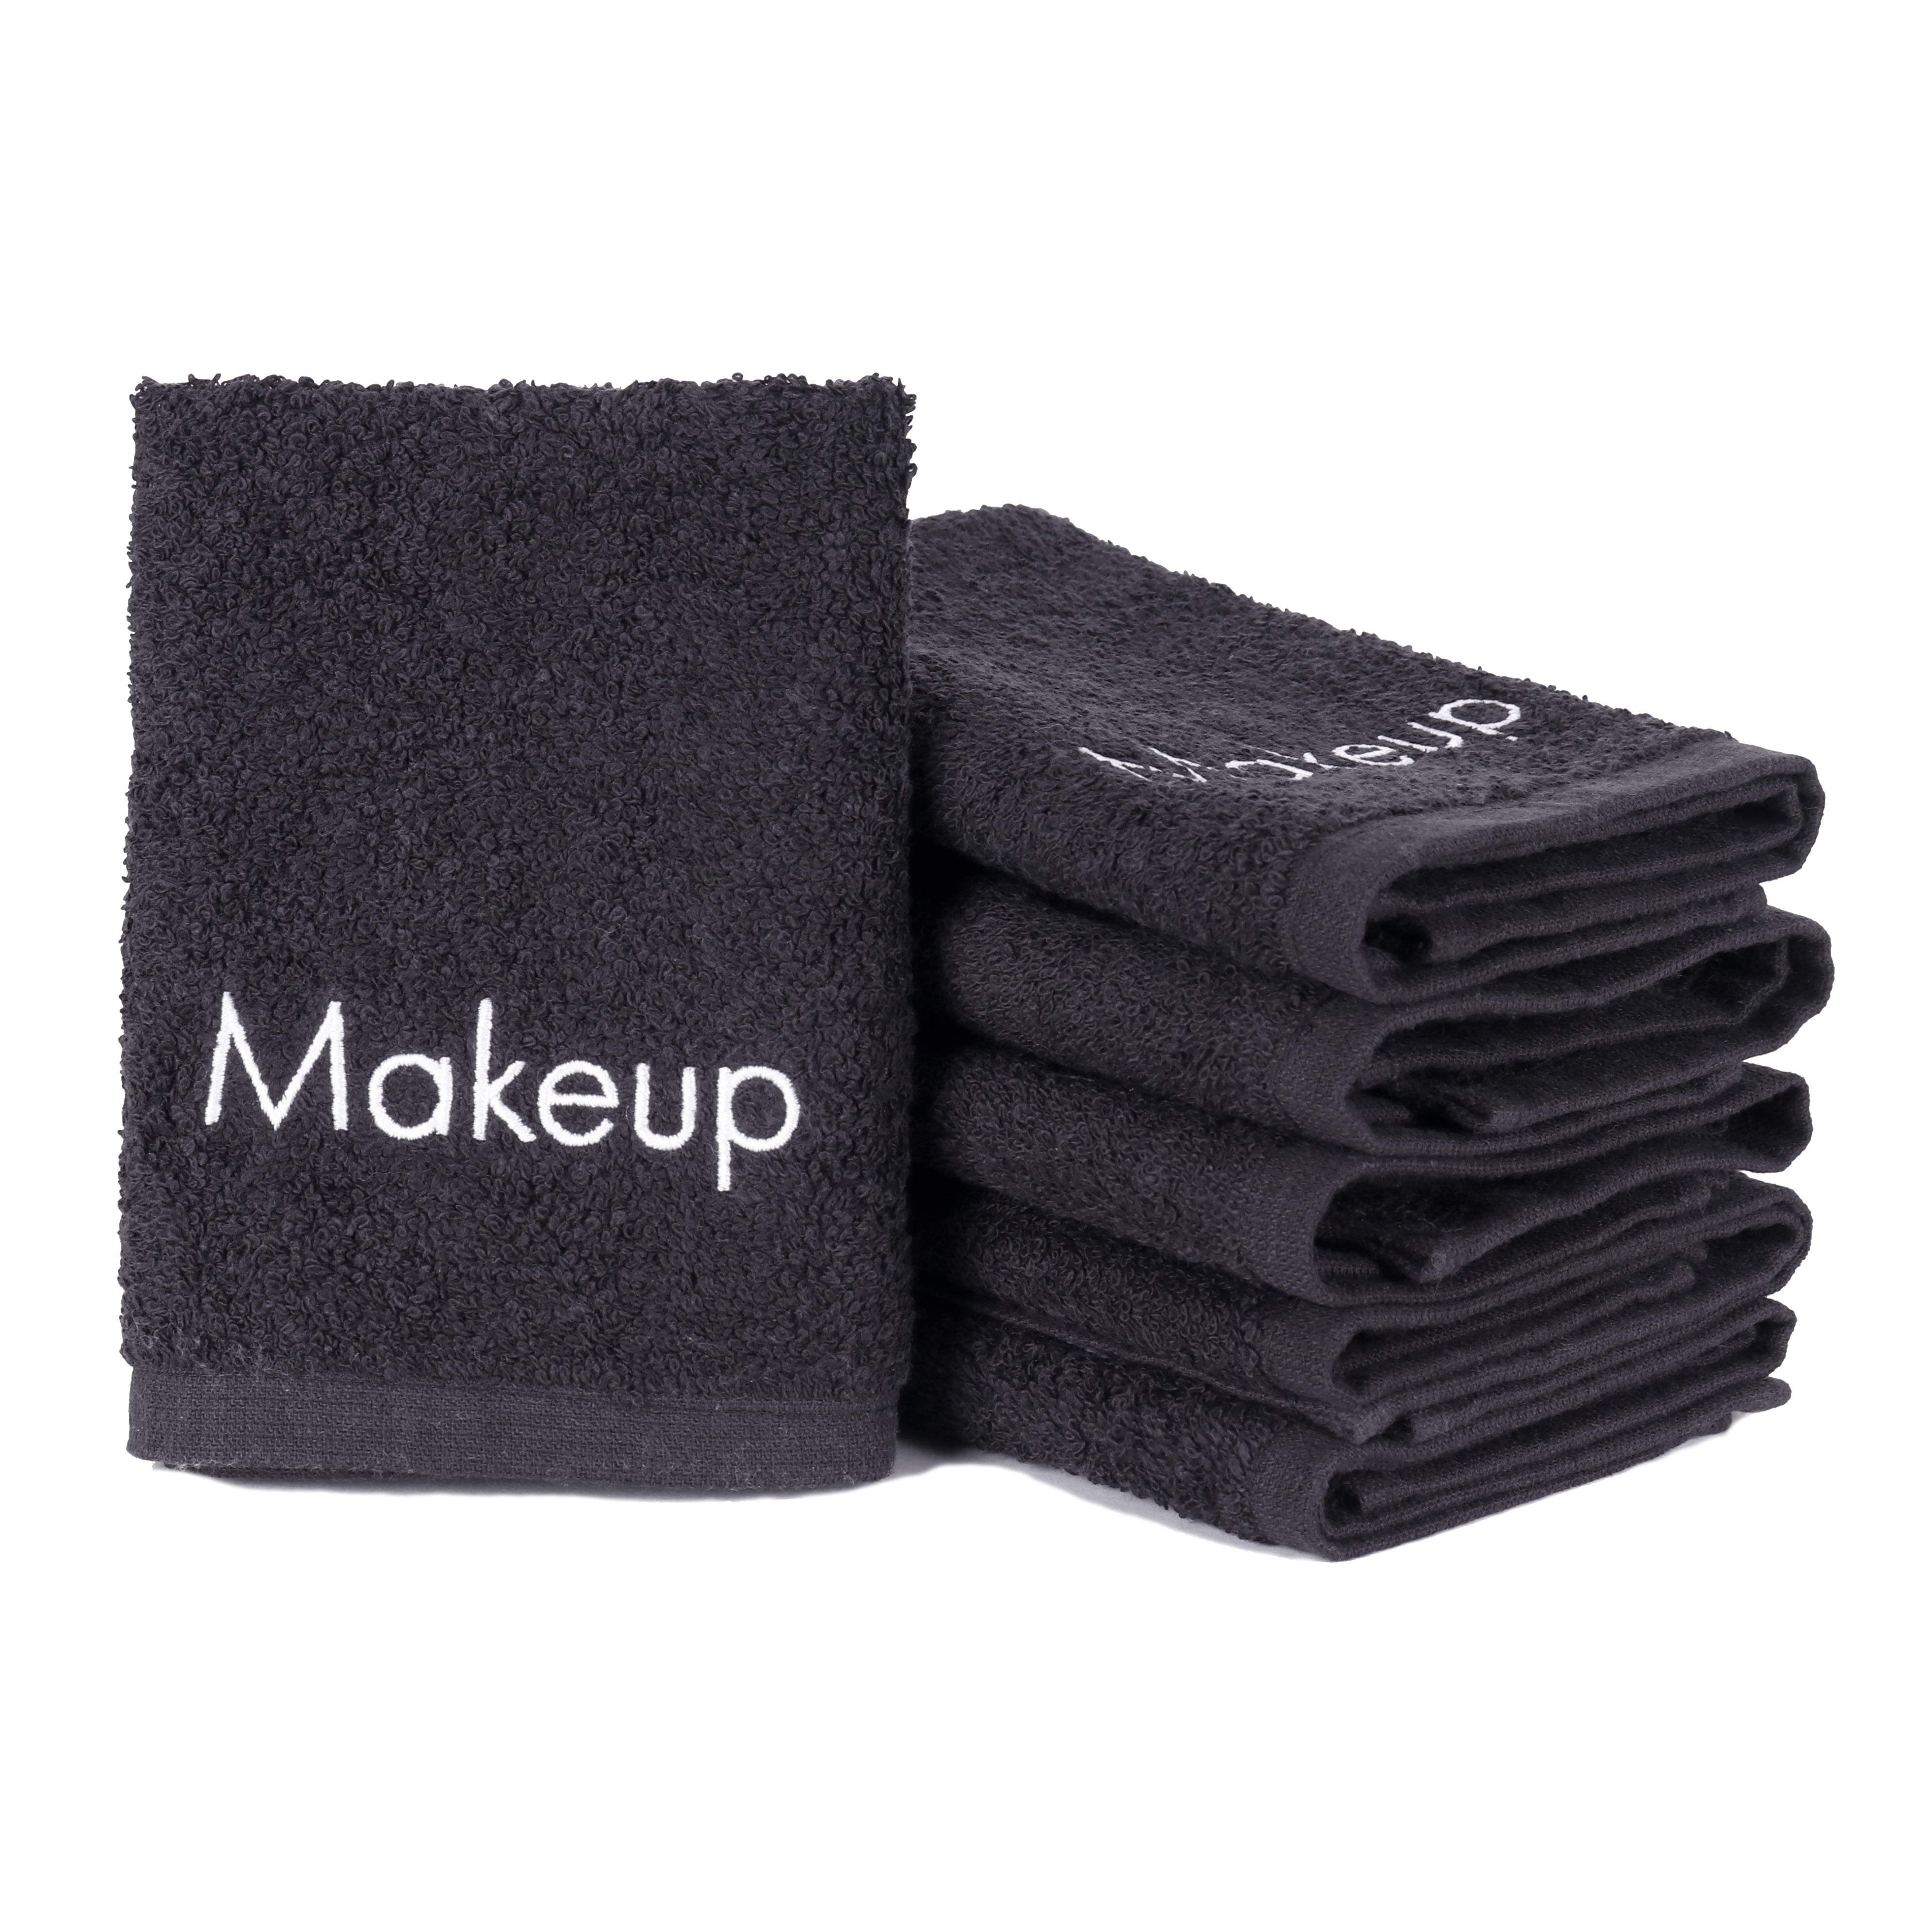 Black Makeup Wash Cloths - 13 x 13